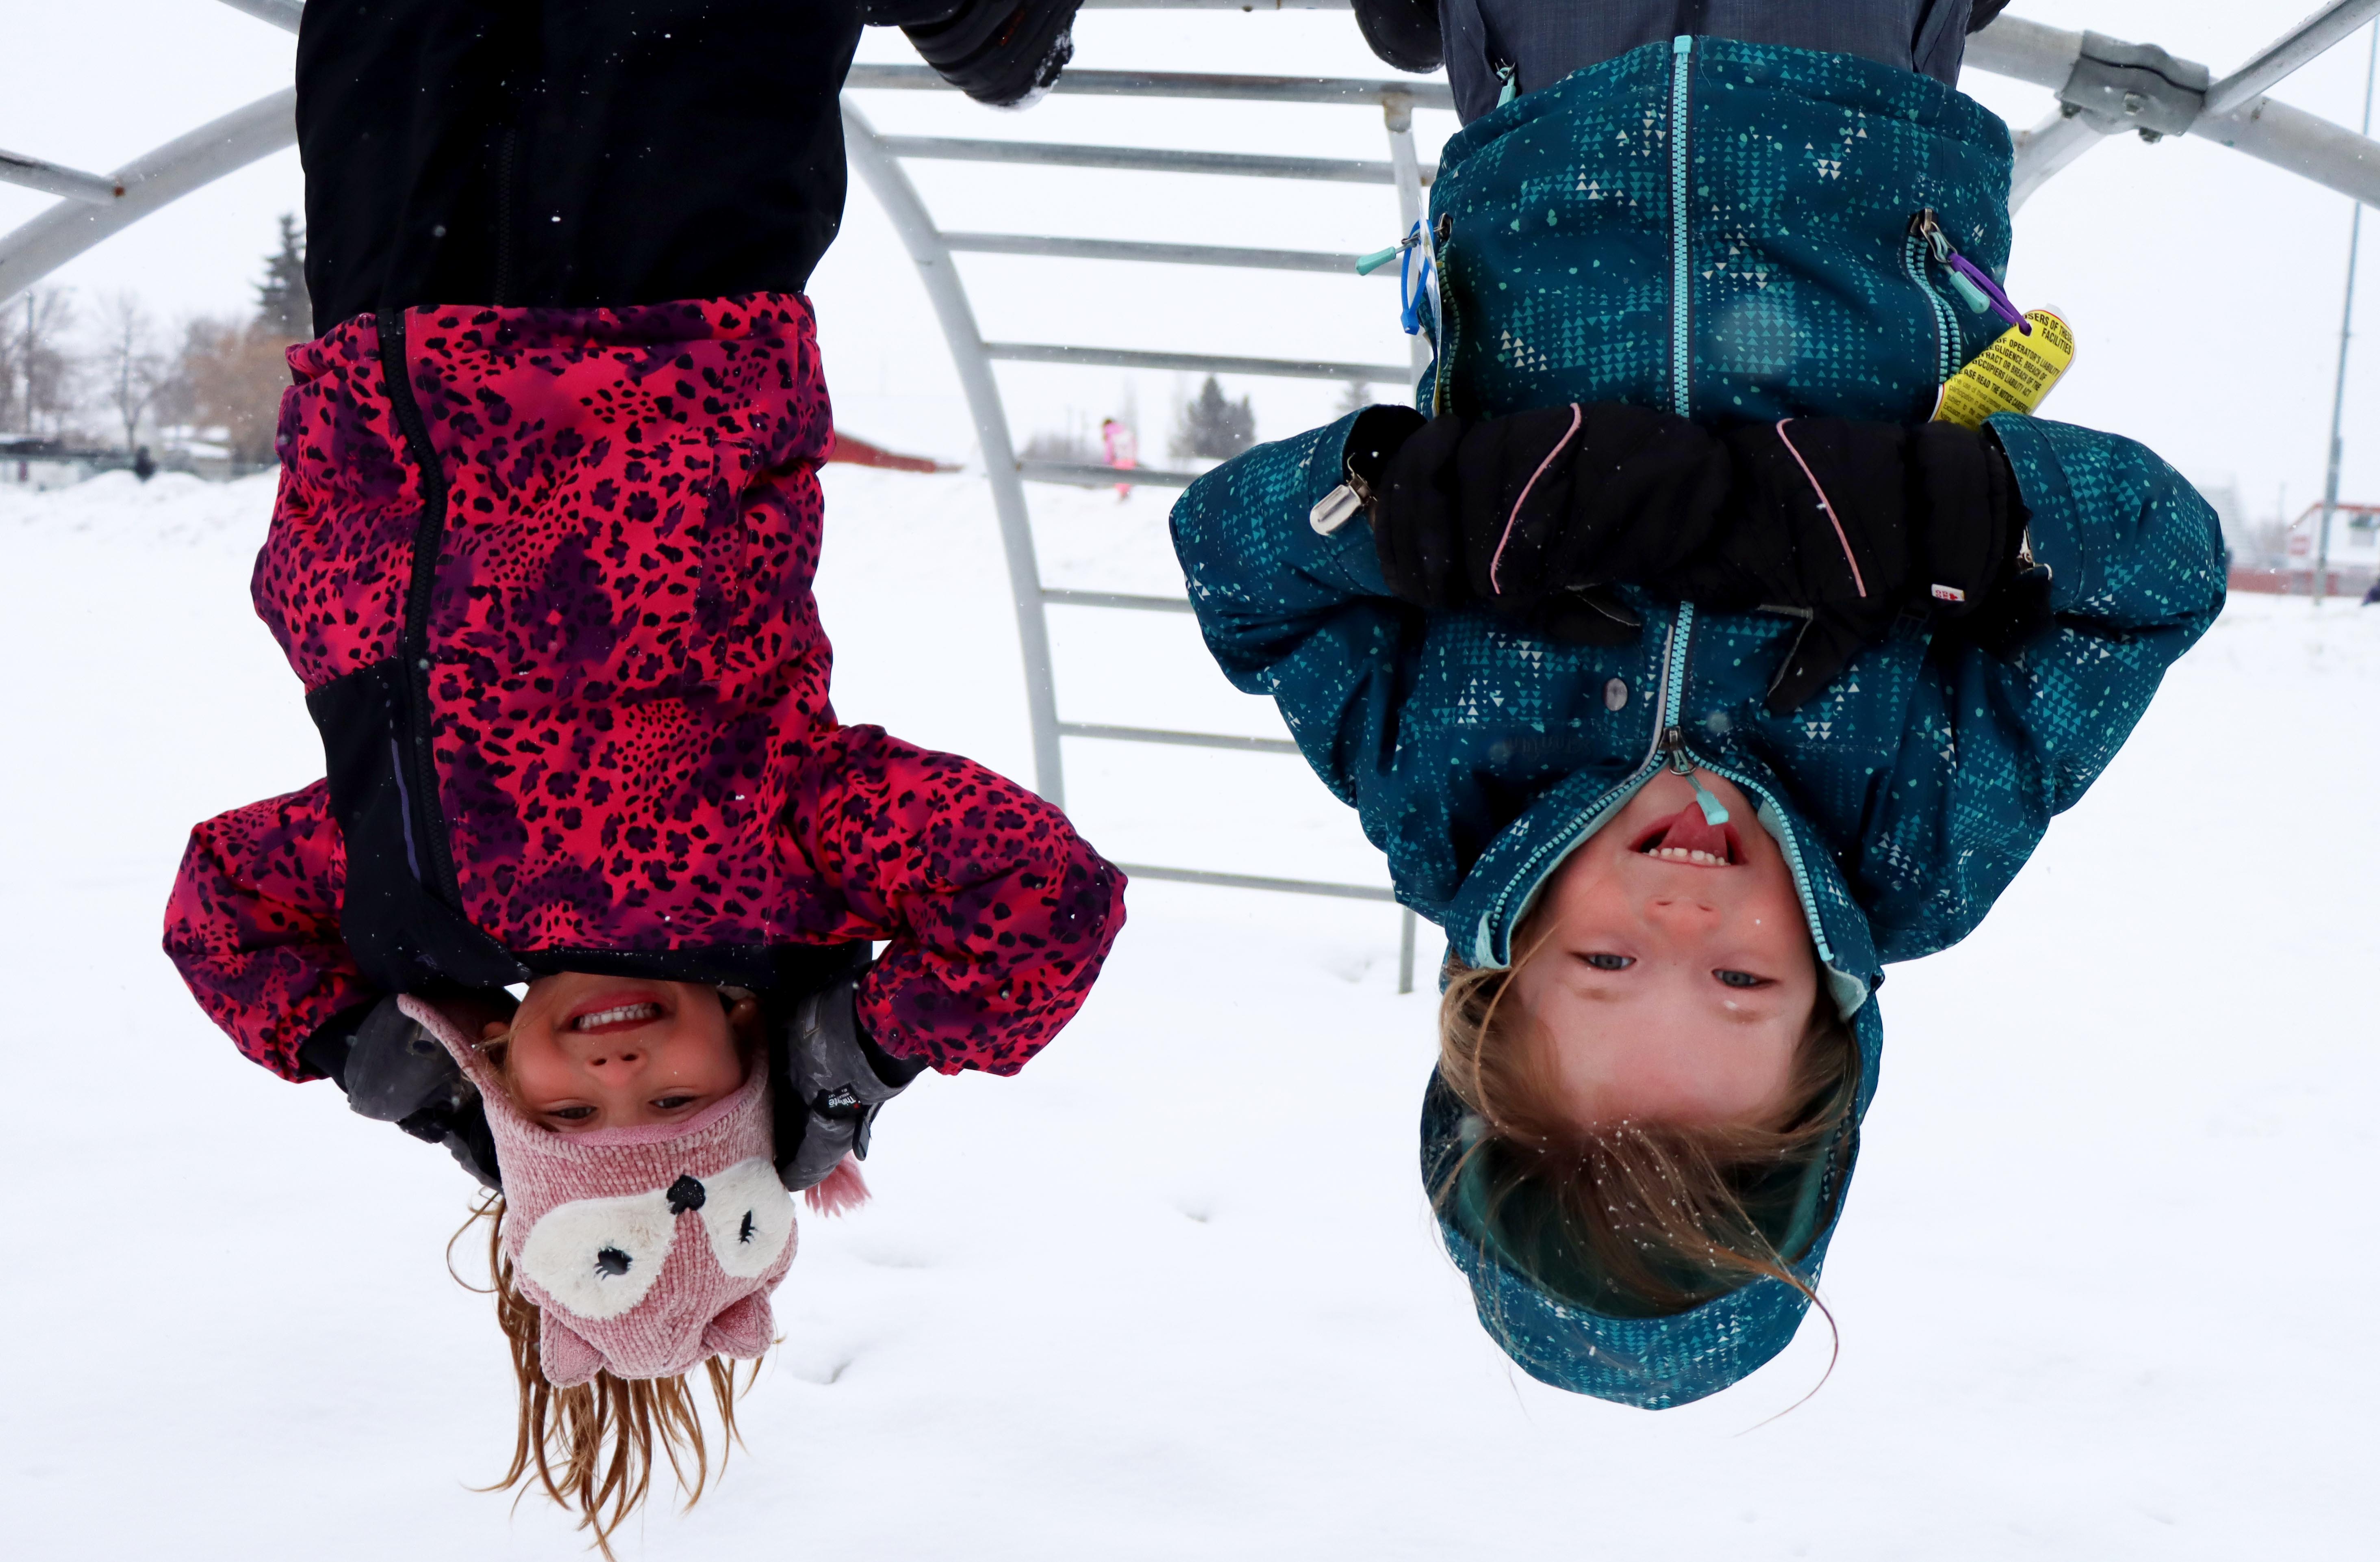 Little girls hanging upside down on monkey bars in winter